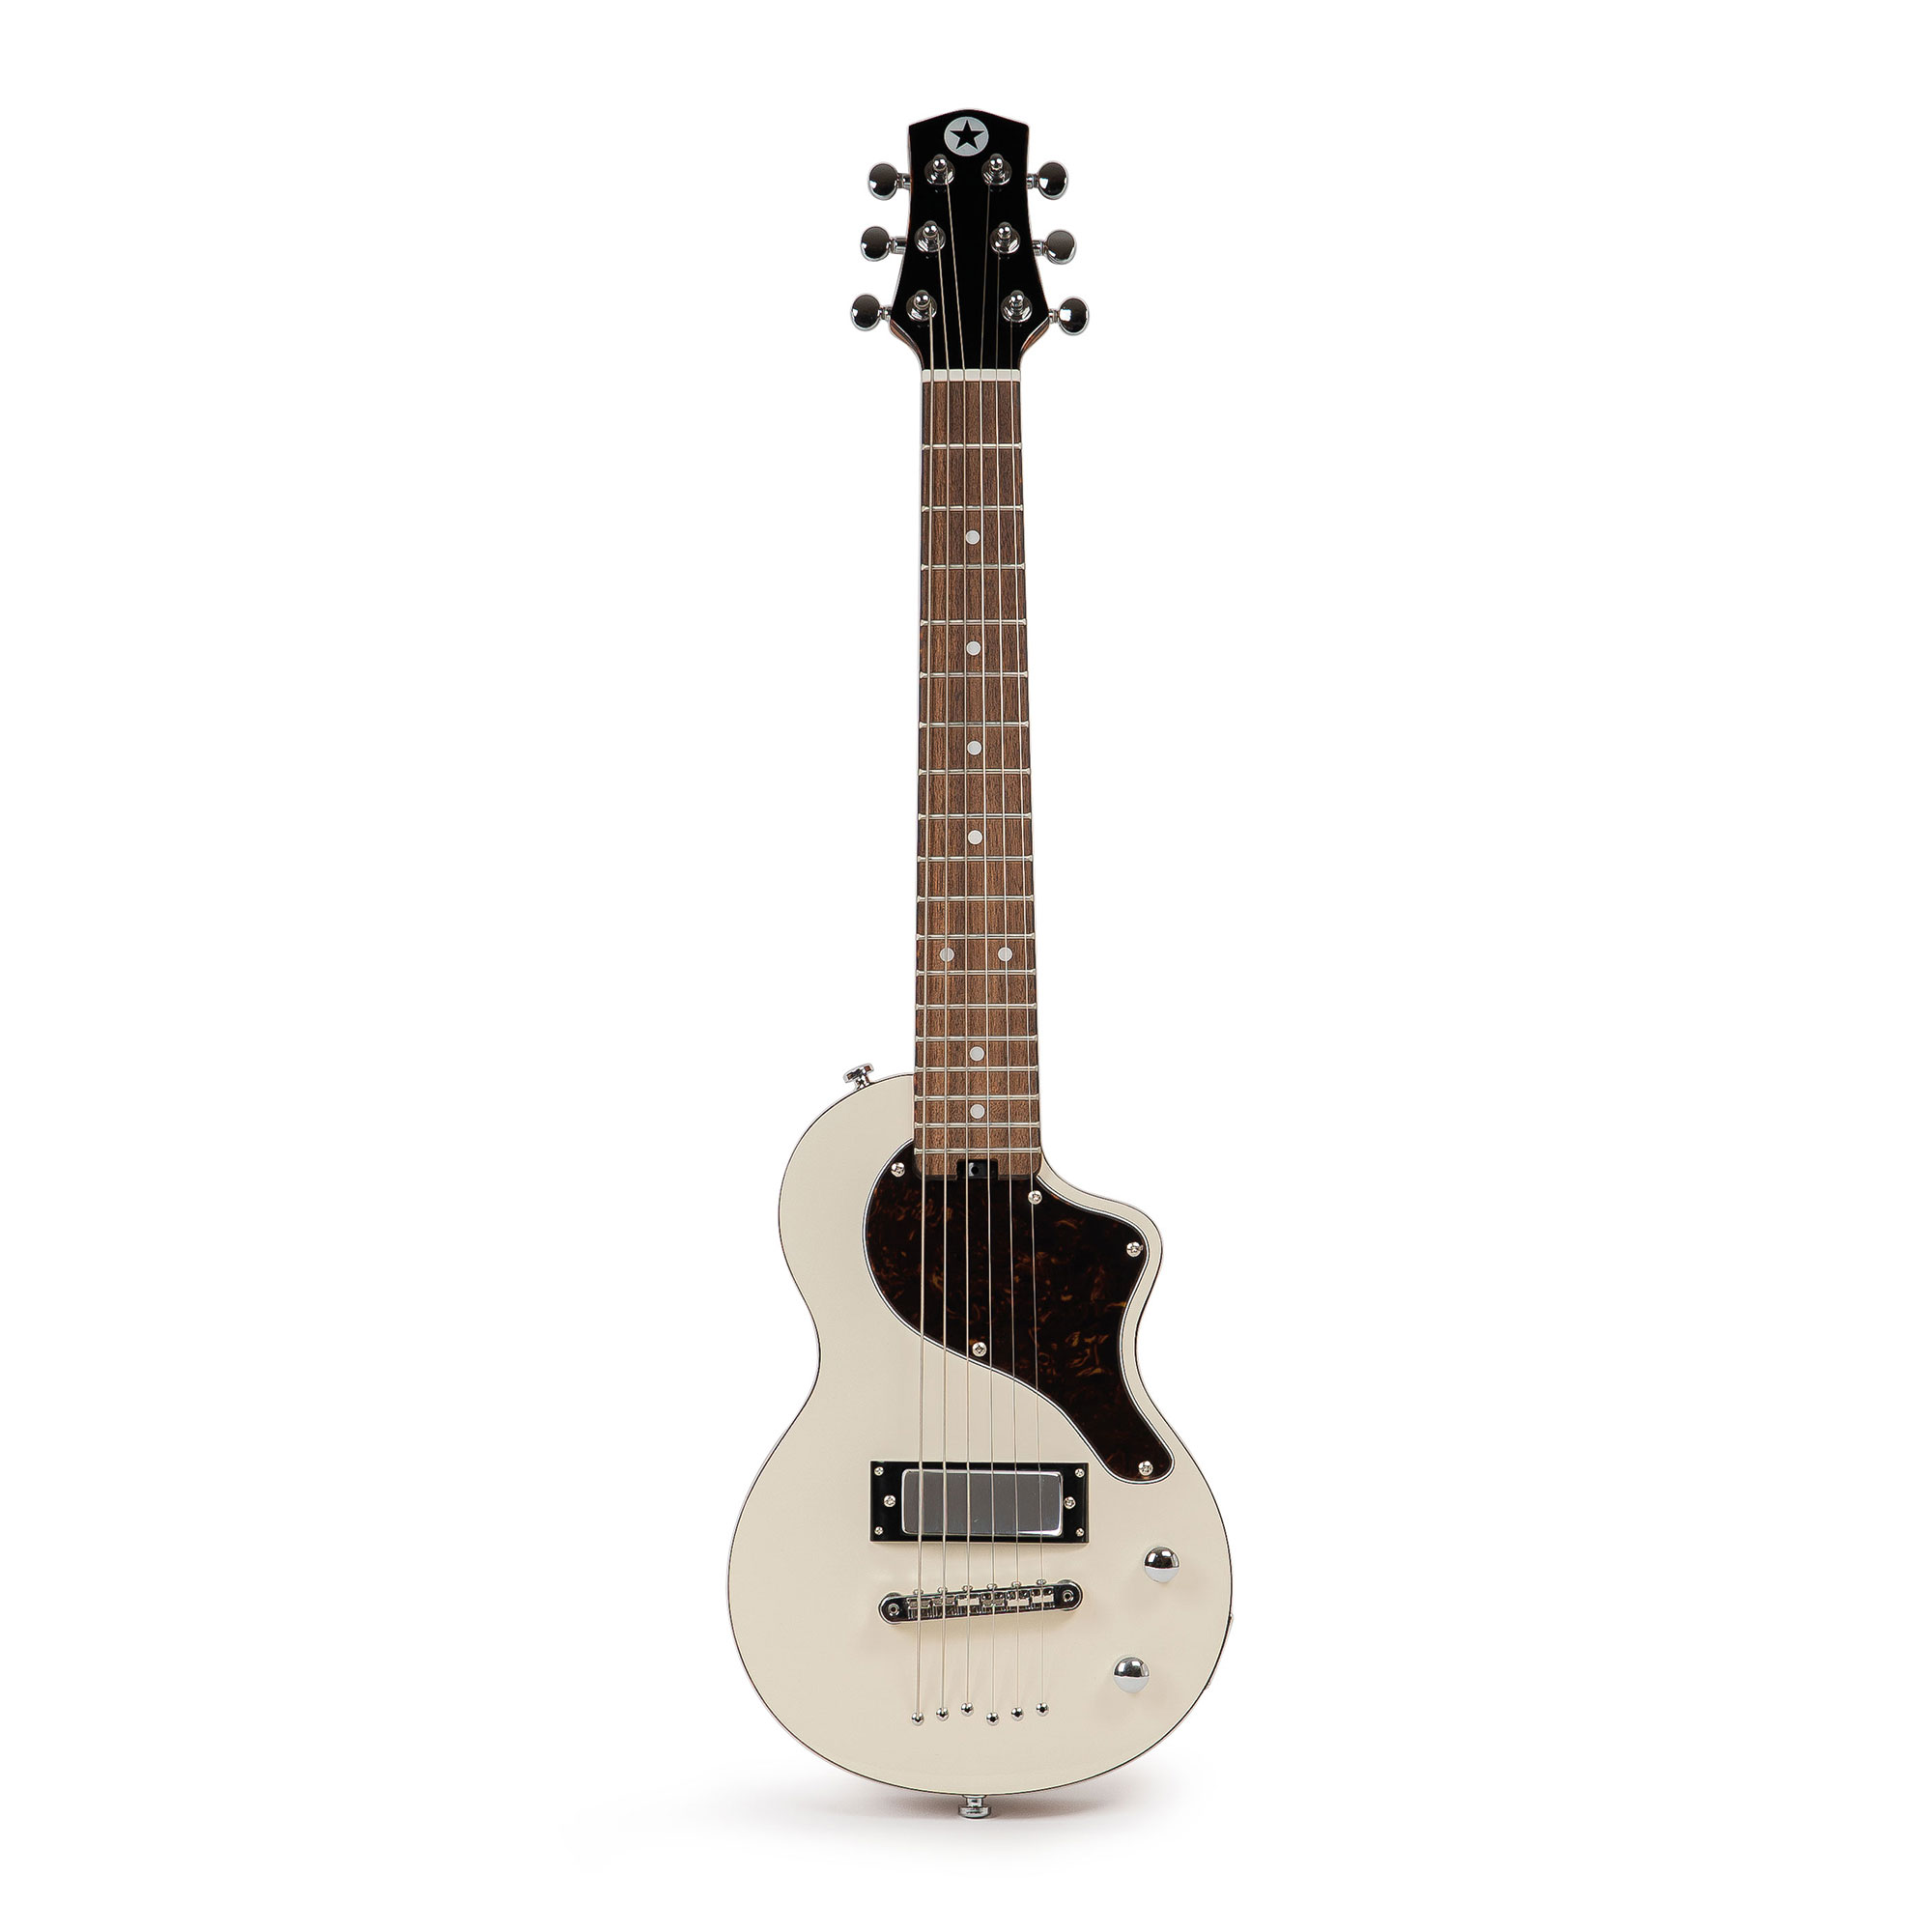 Køb Blackstar Carry-on Travel Guitar - Hvid - Pris 1495.00 kr.